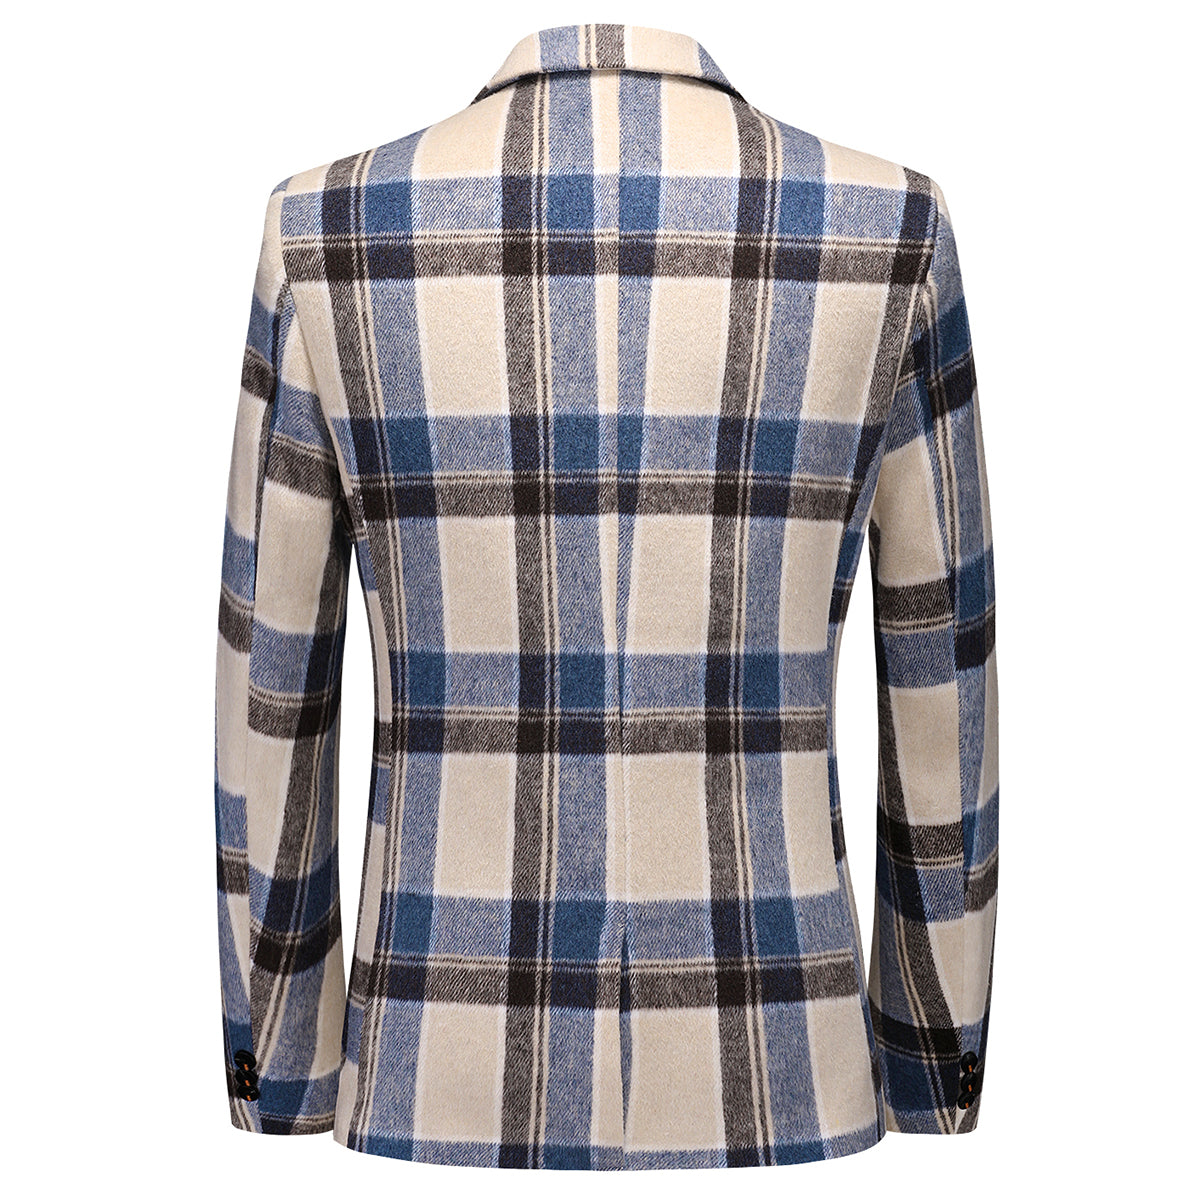 Men's Autumn Jacket Plaid Two Buttons Casual Blazer Blue